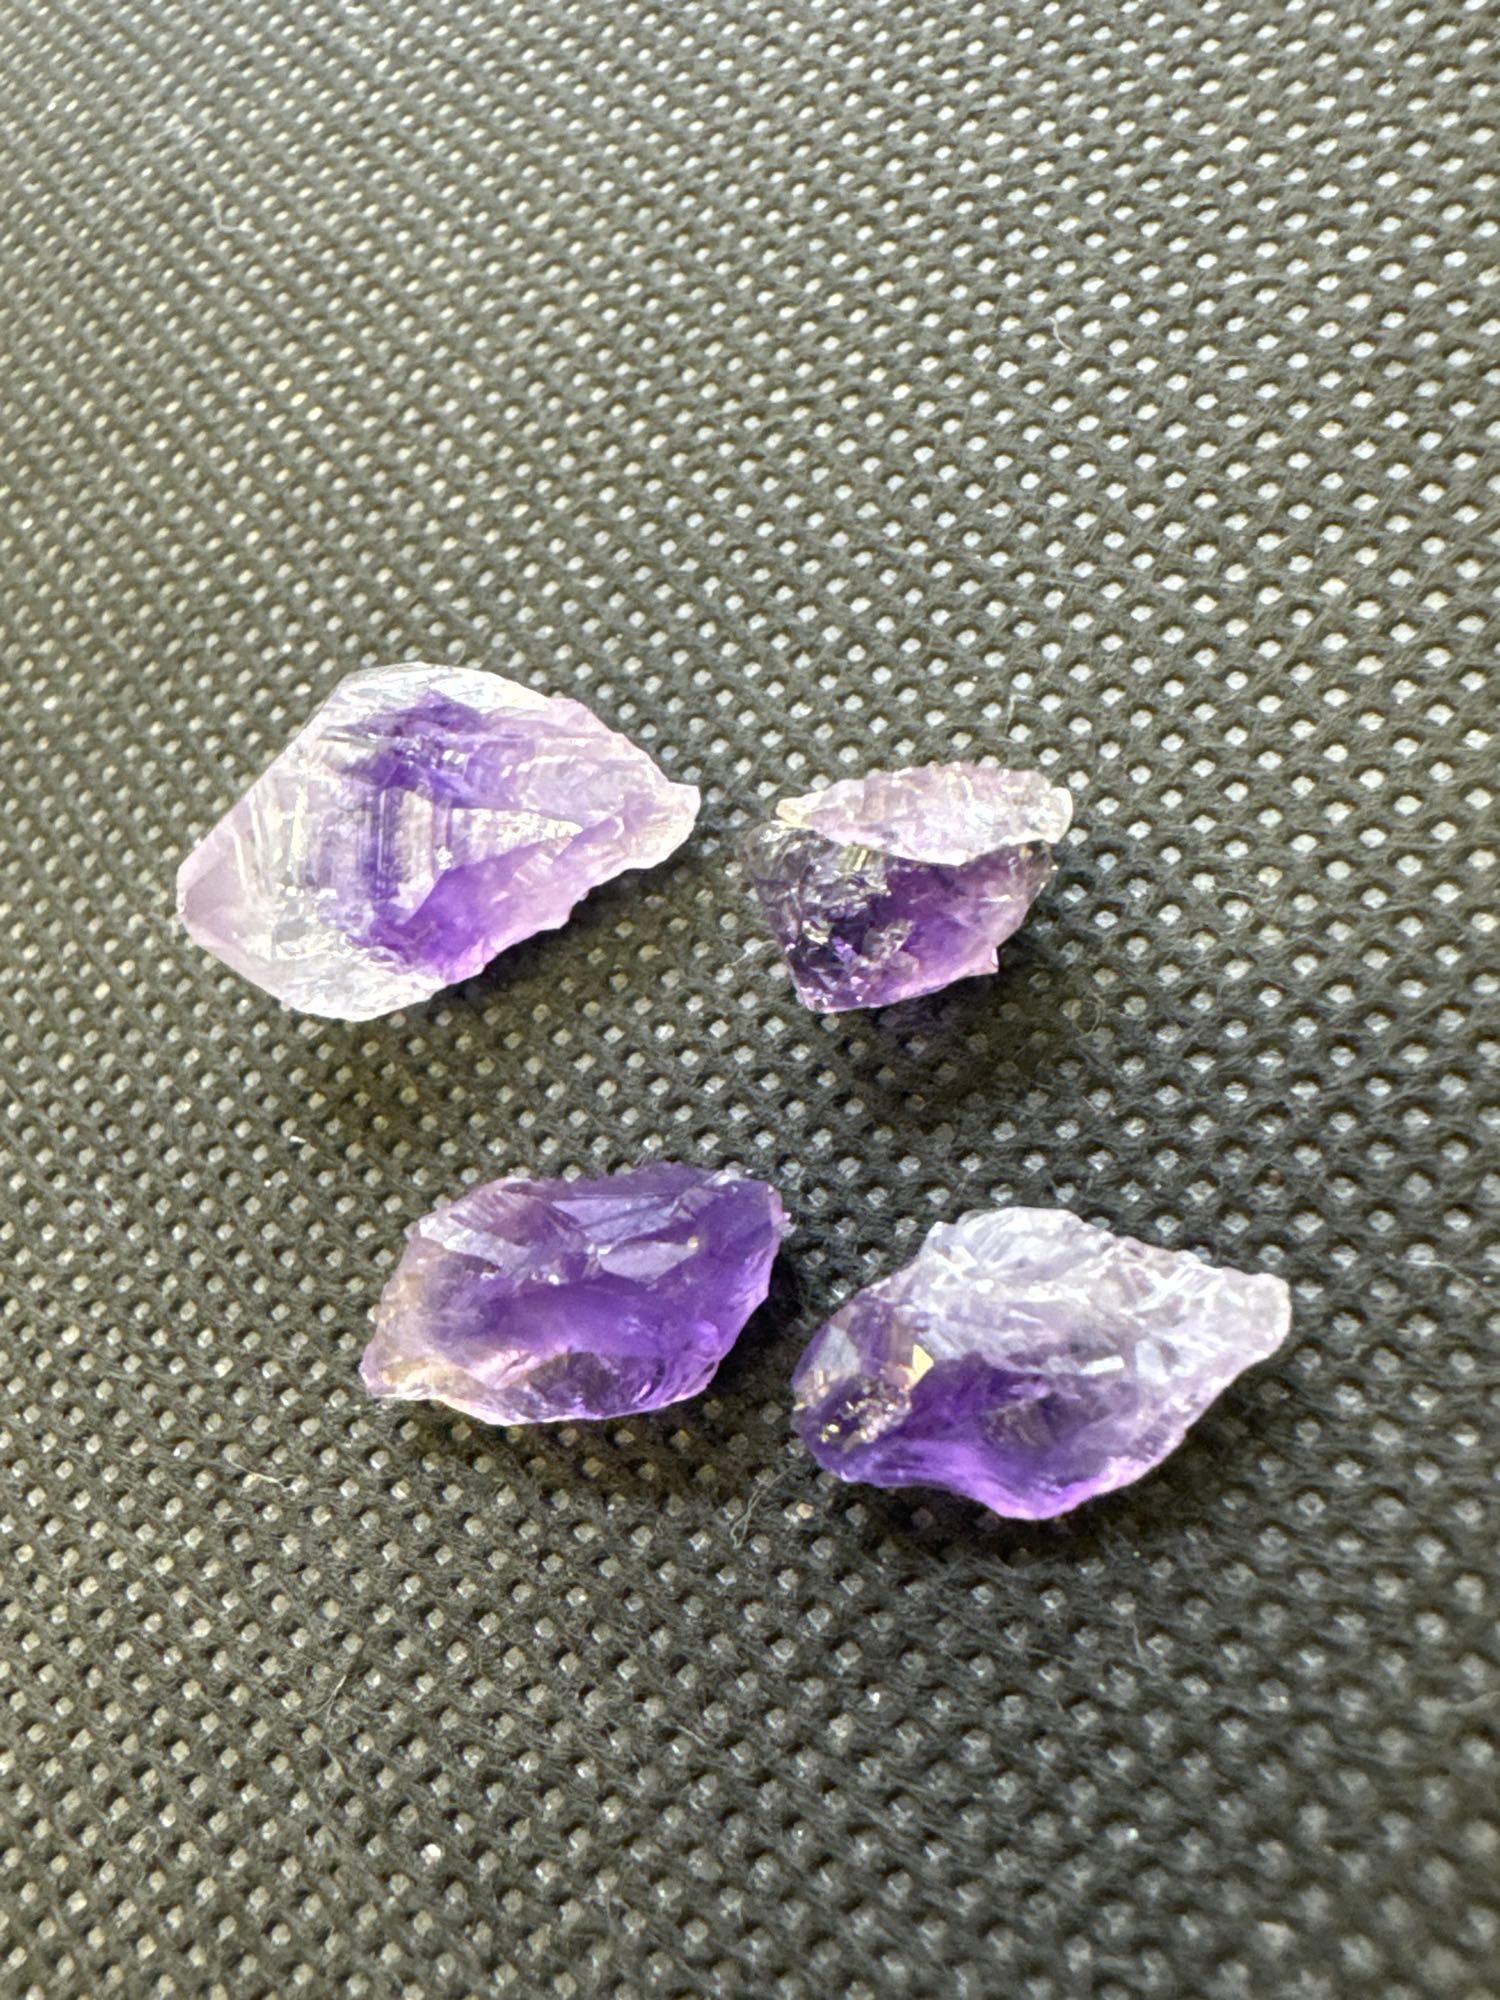 Raw Uncut Purple Amethyst Gemstone 22.15 CT